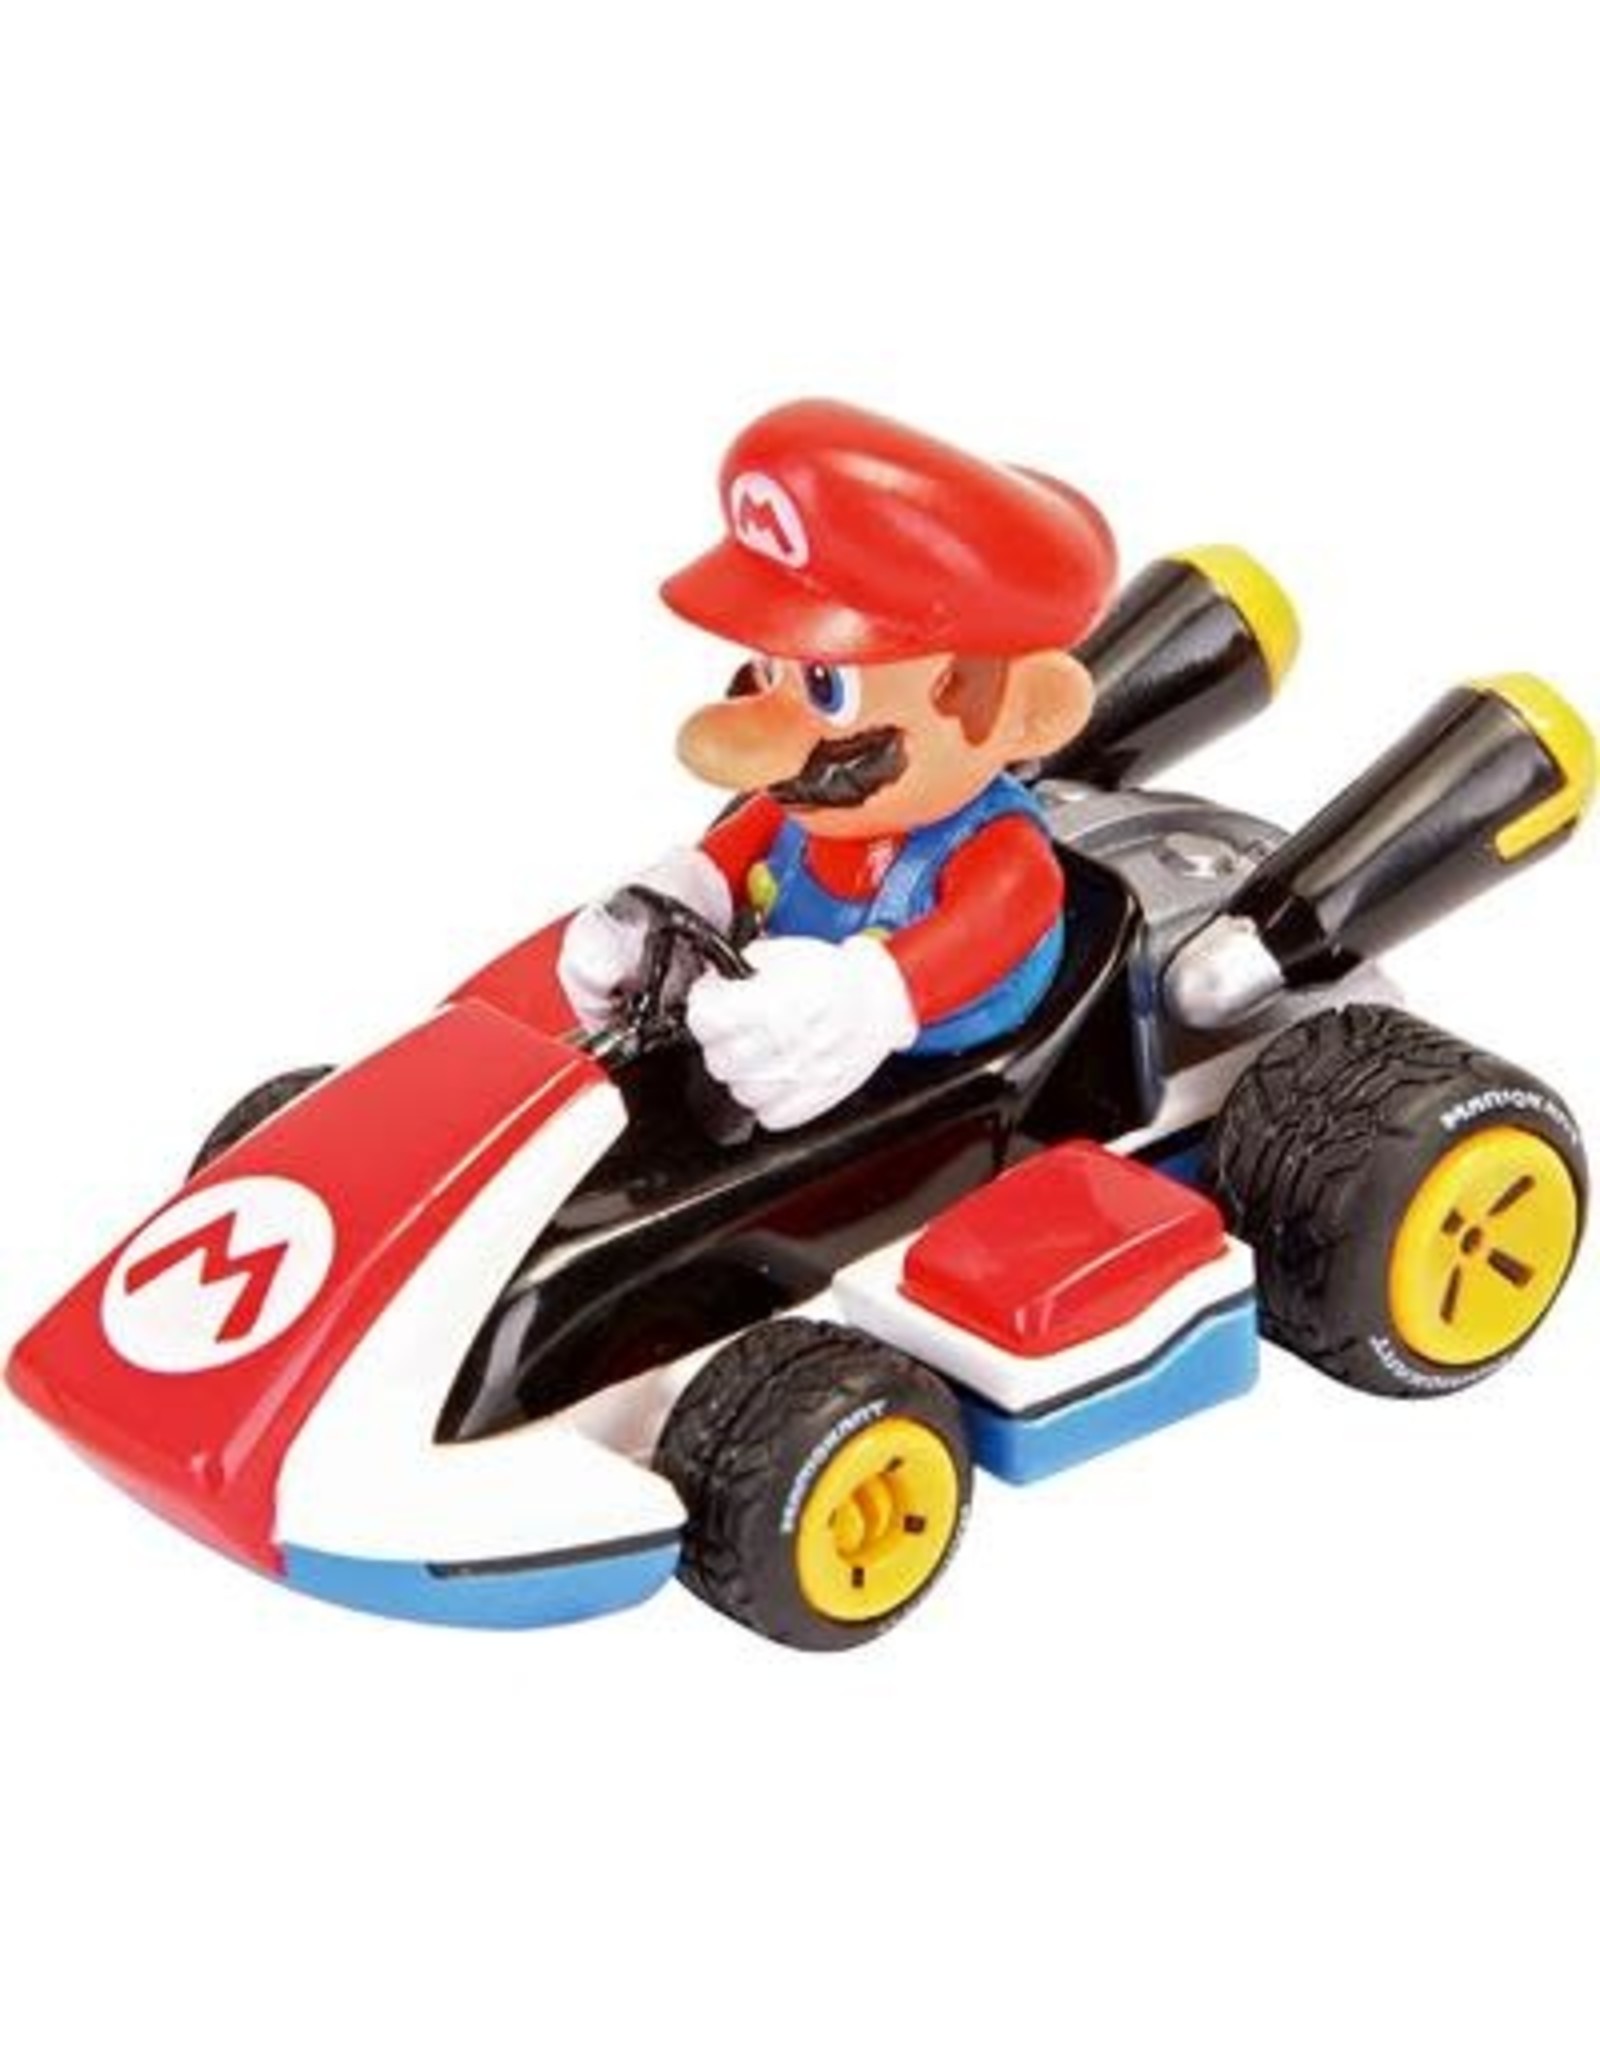 Carrera 1:43  Nintendo Super Mario Kart 8  verschillende